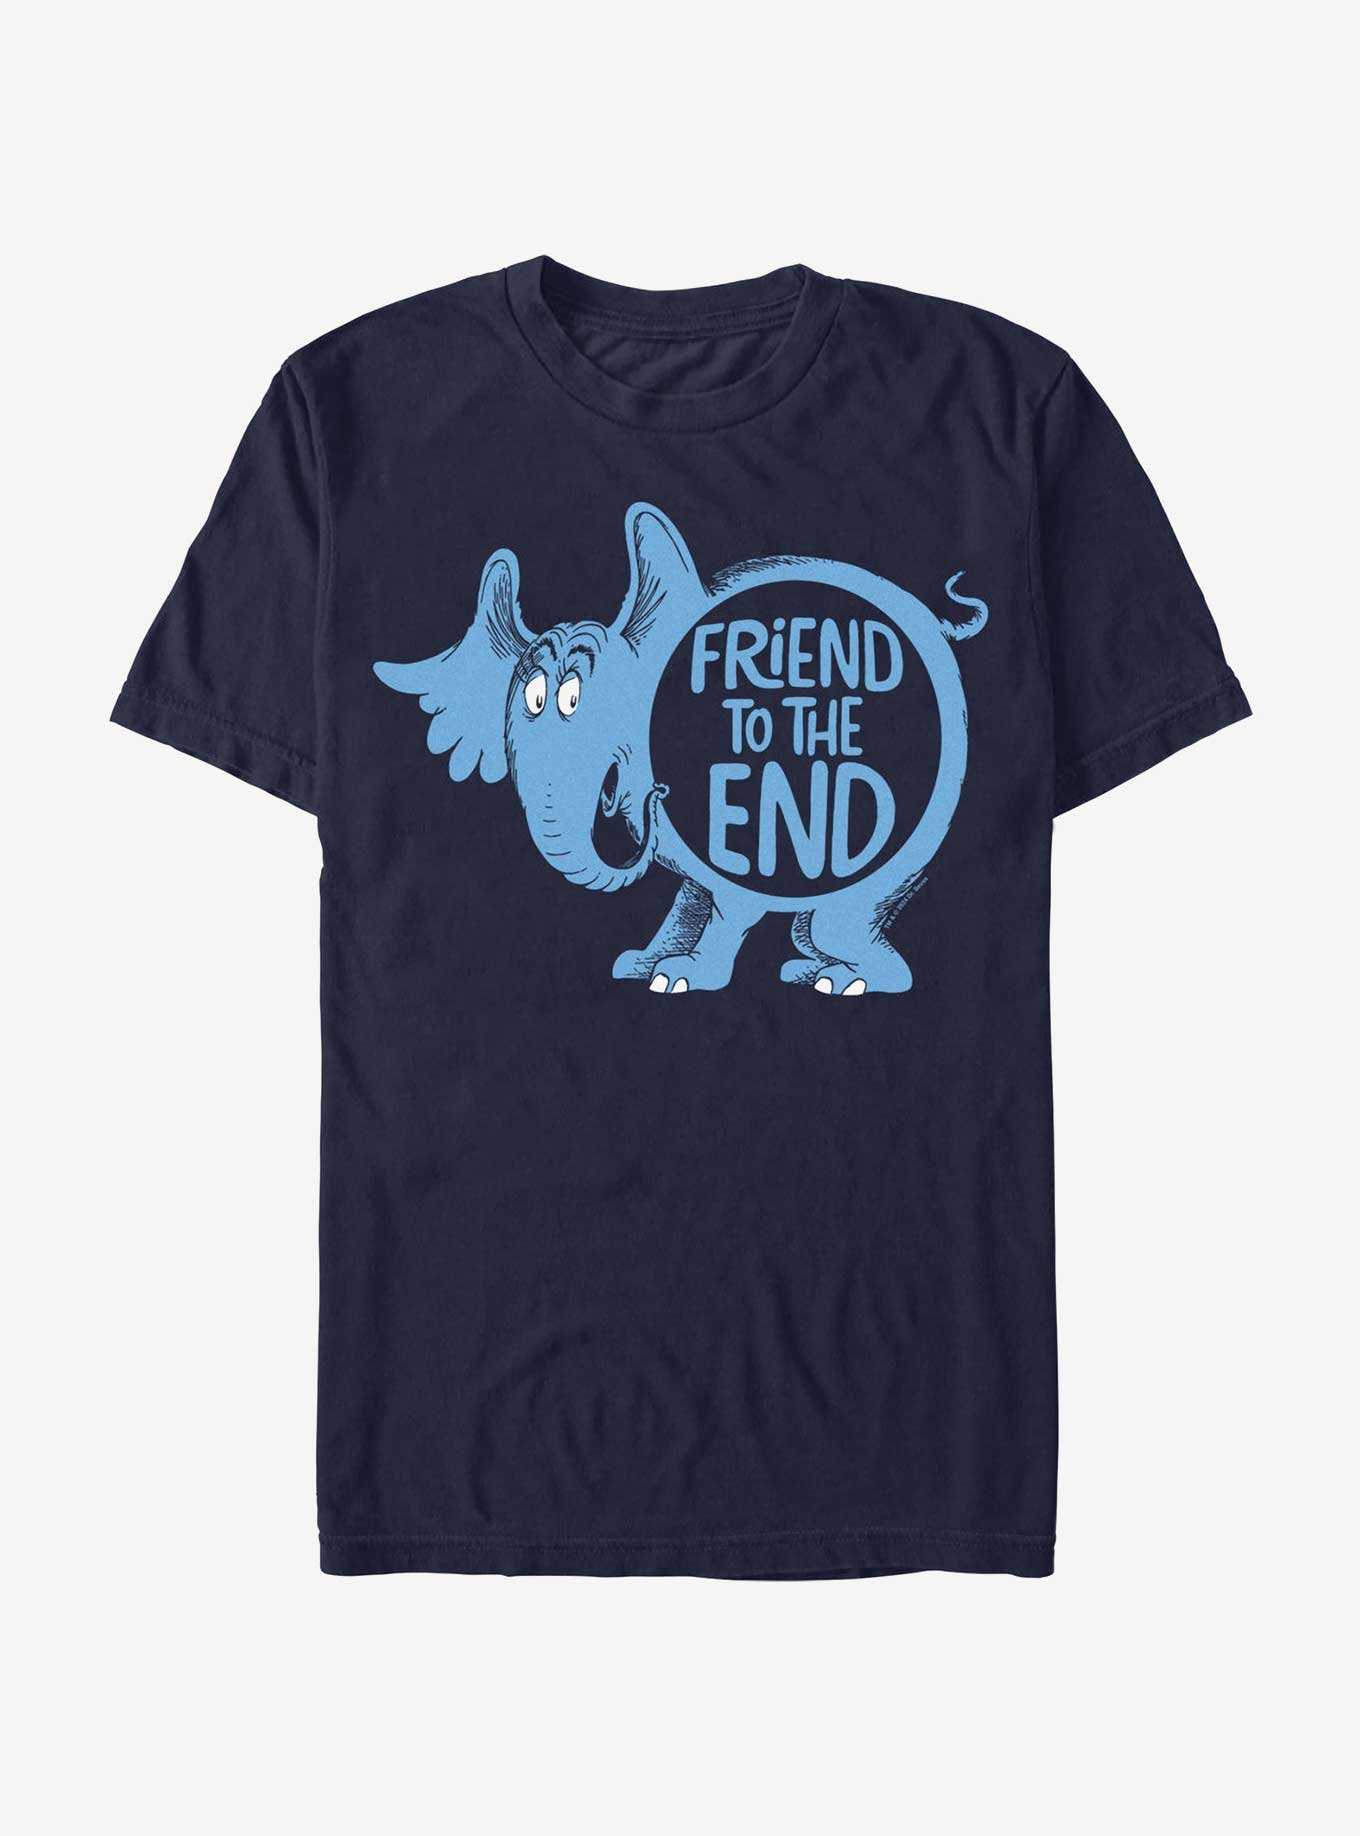 Dr. Seuss Friend Twoend T-Shirt, , hi-res